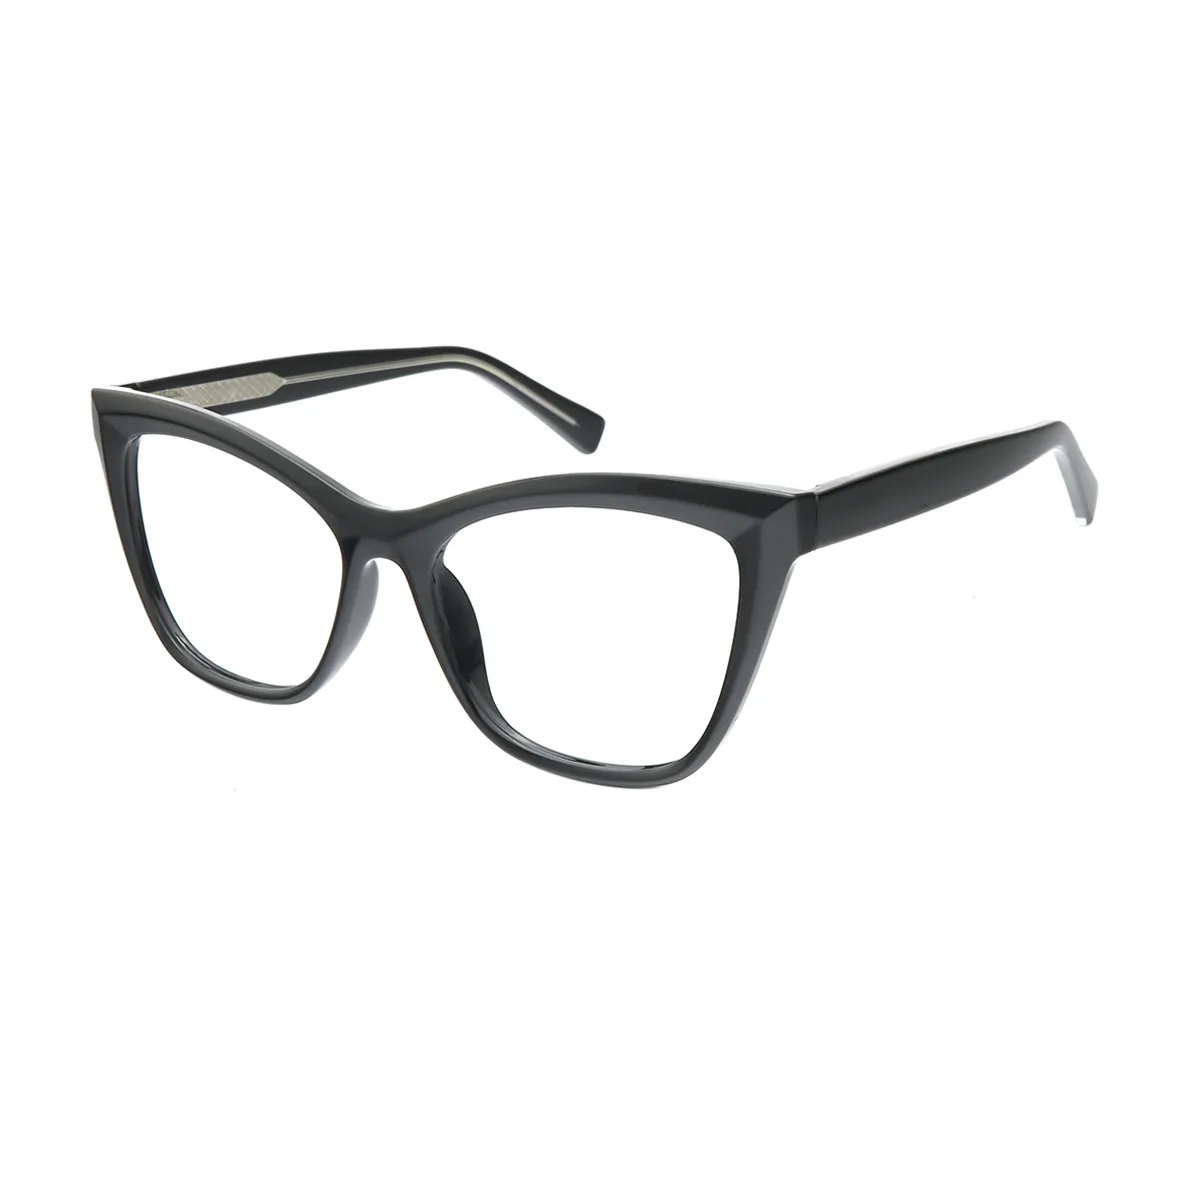 Dame - Cat-eye Black Glasses for Women